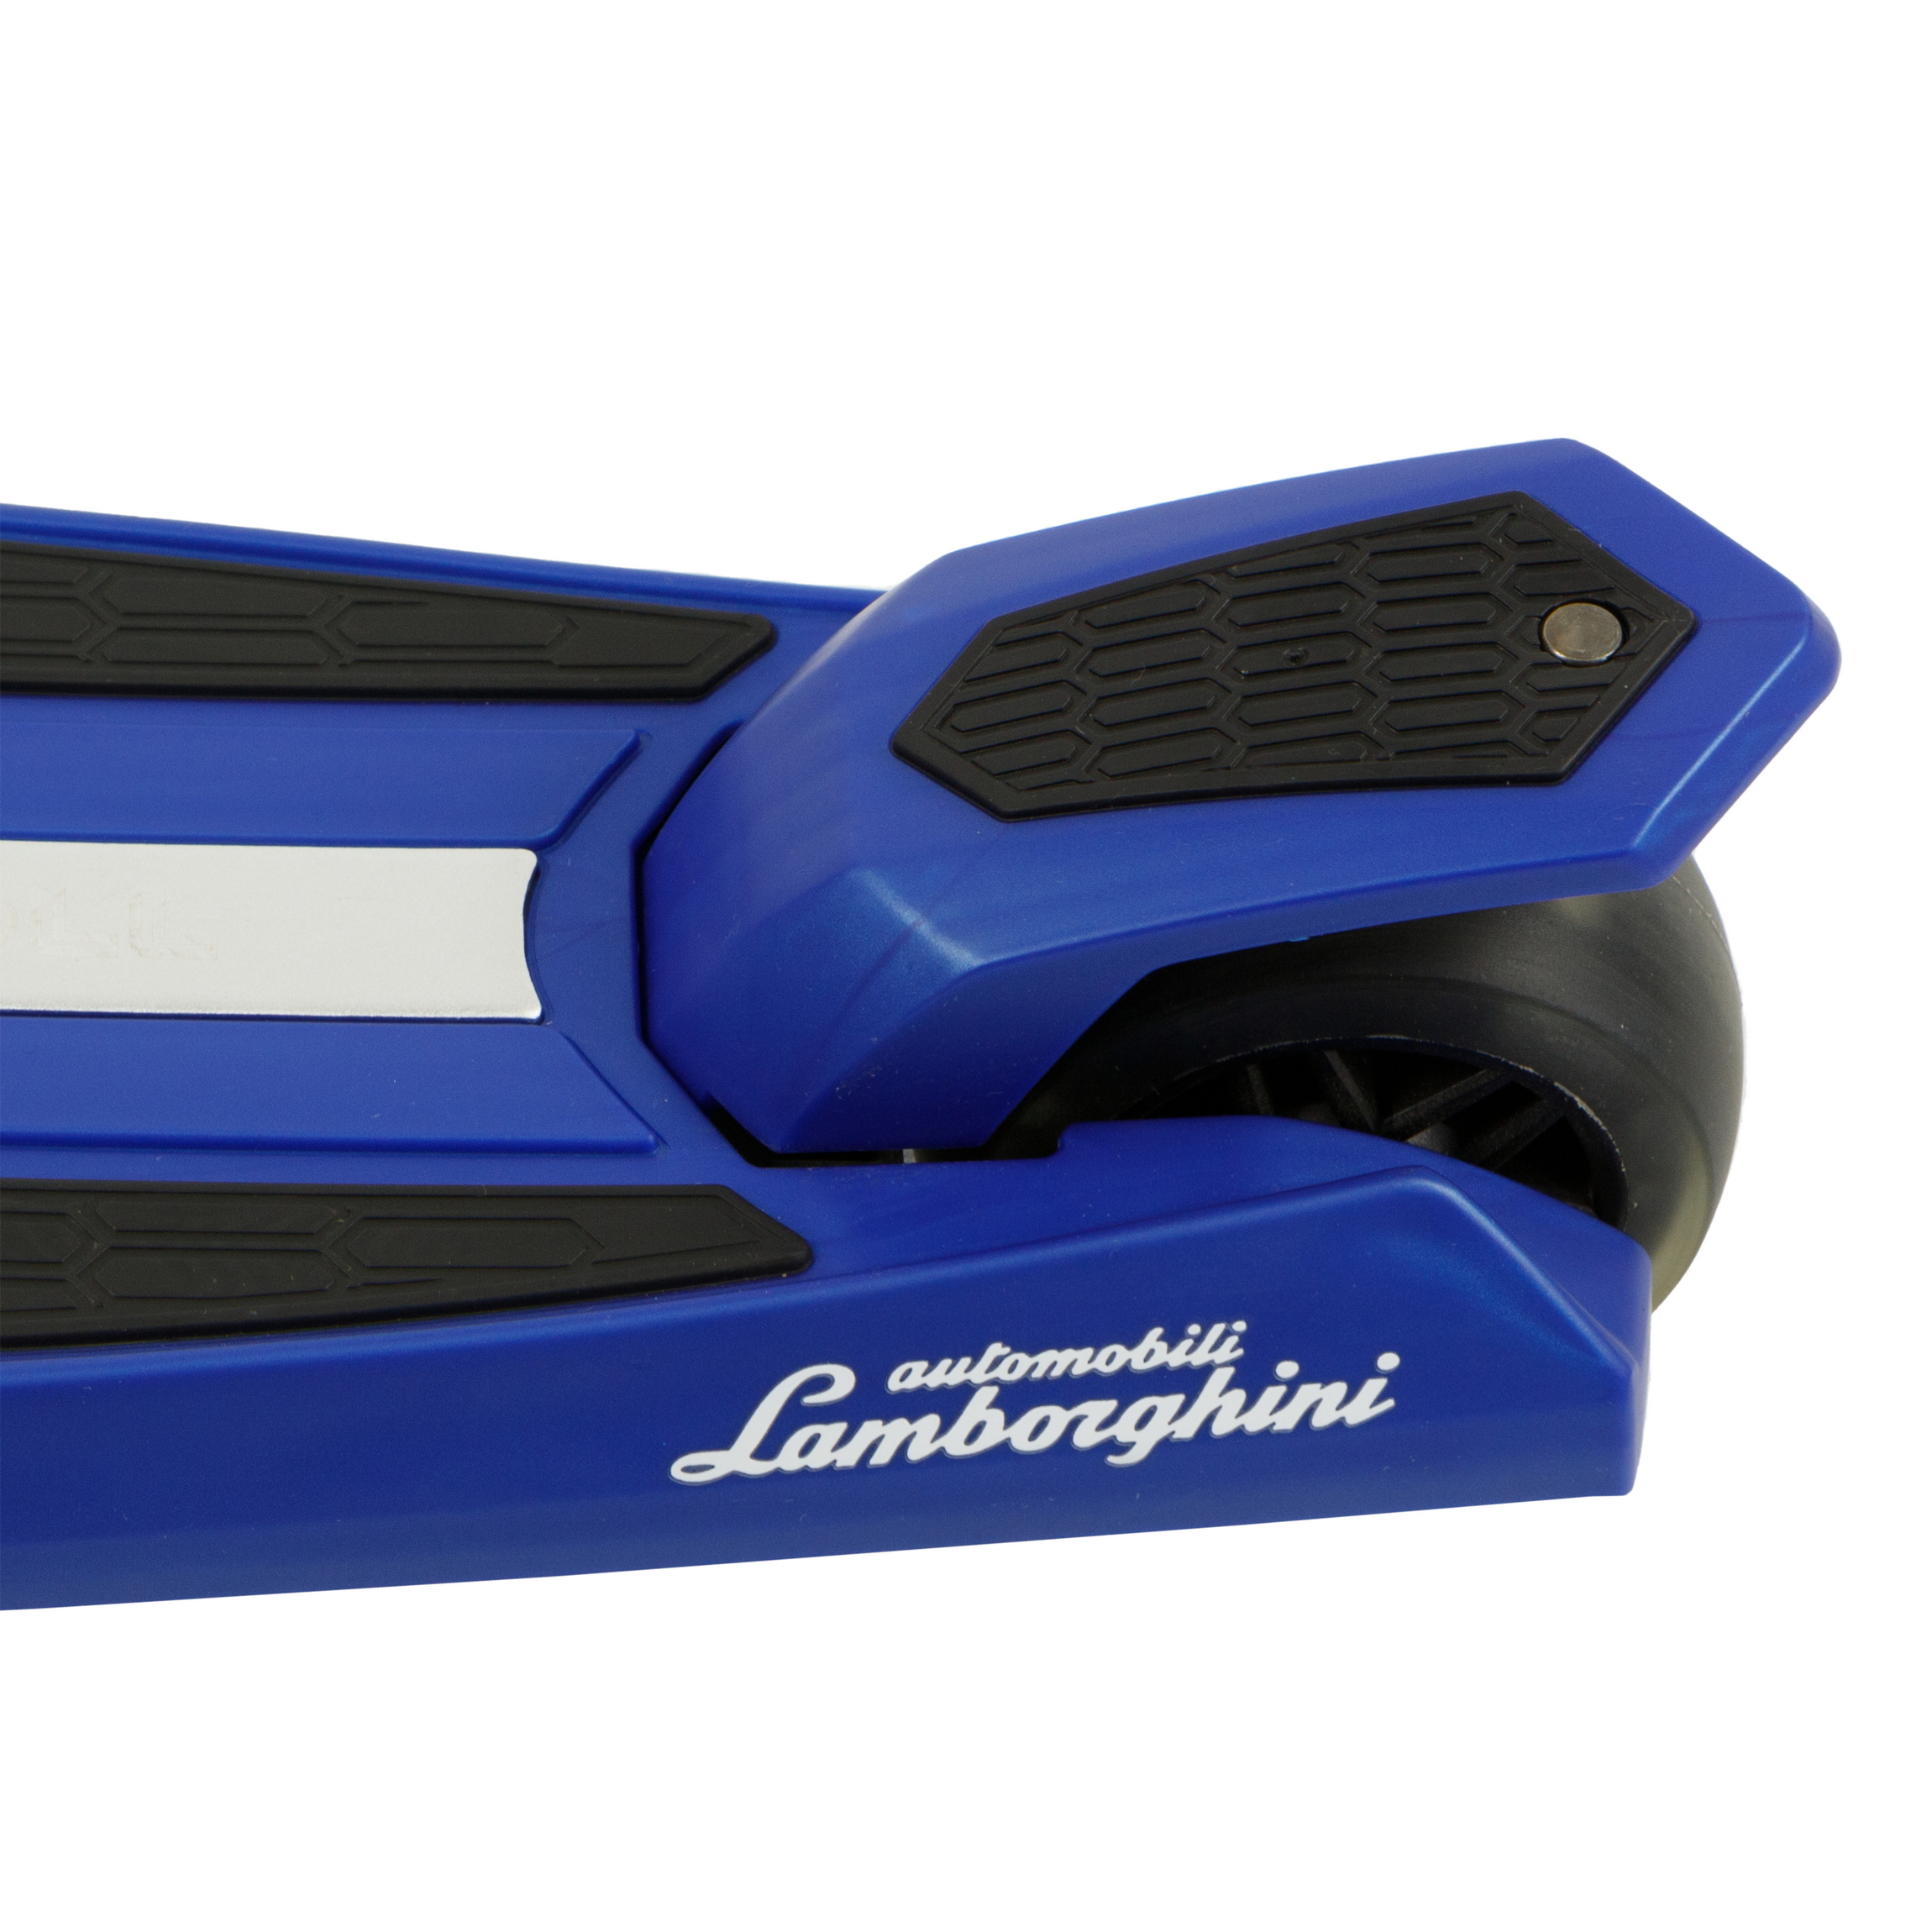 Самокат Navigator Lamborghini Управление наклоном со световыми эффектами Синий - фото 5